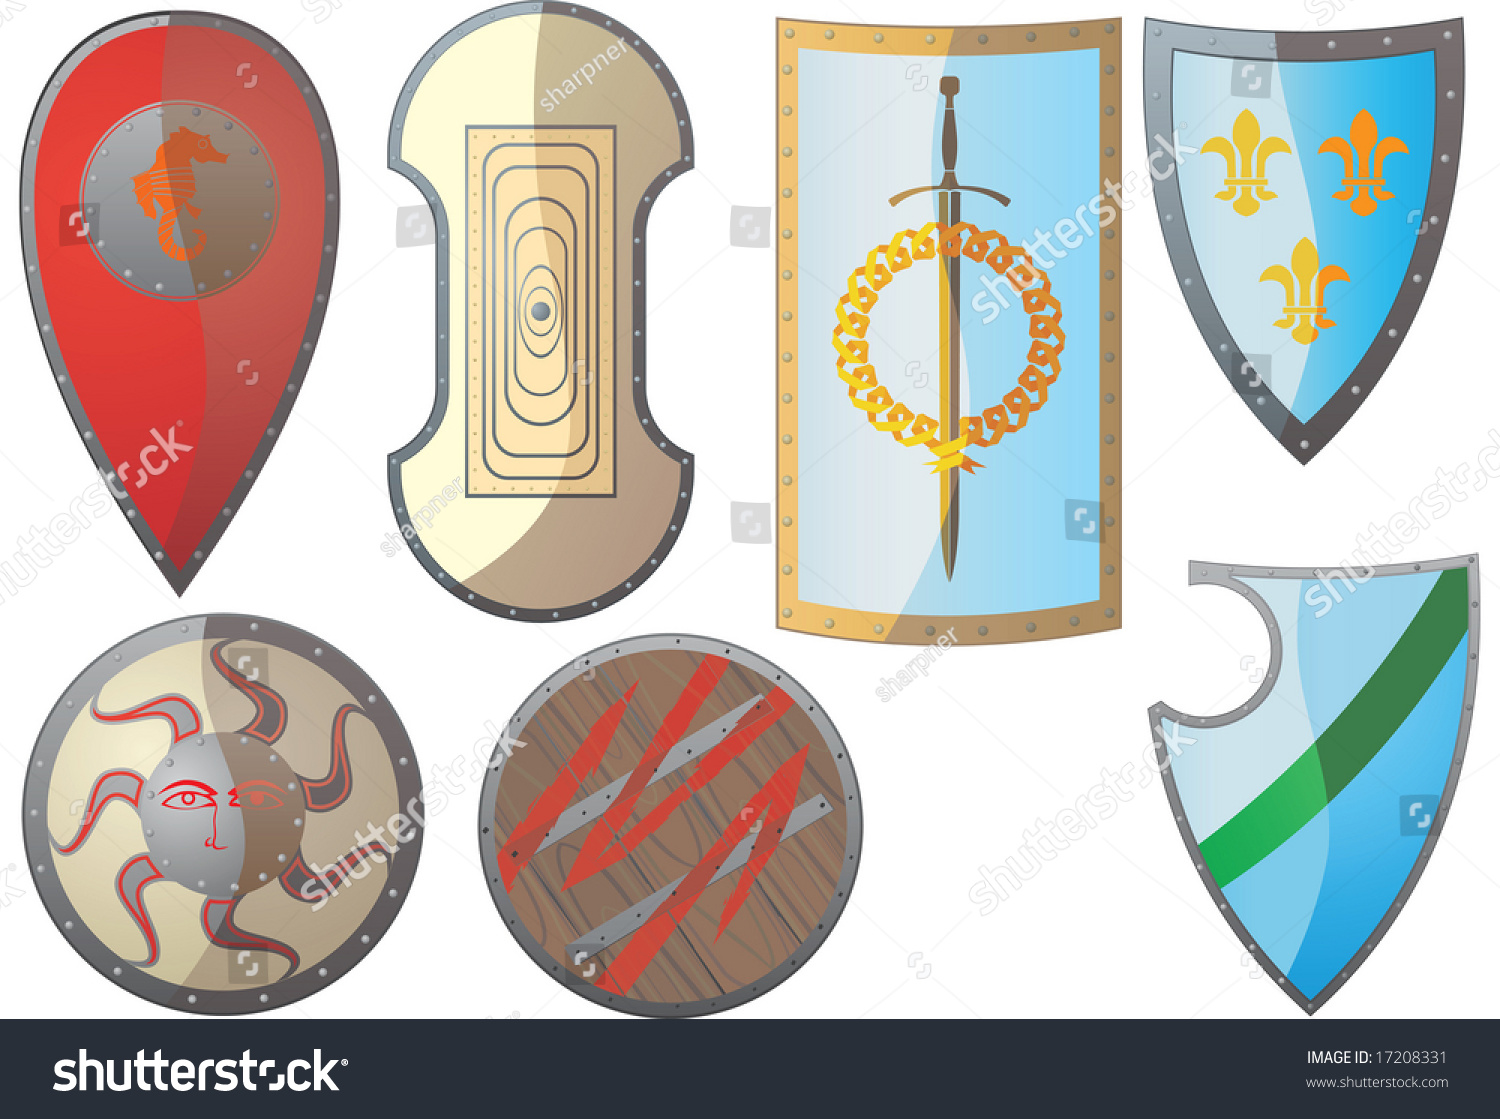 Эмблемы на щитах русских воинов